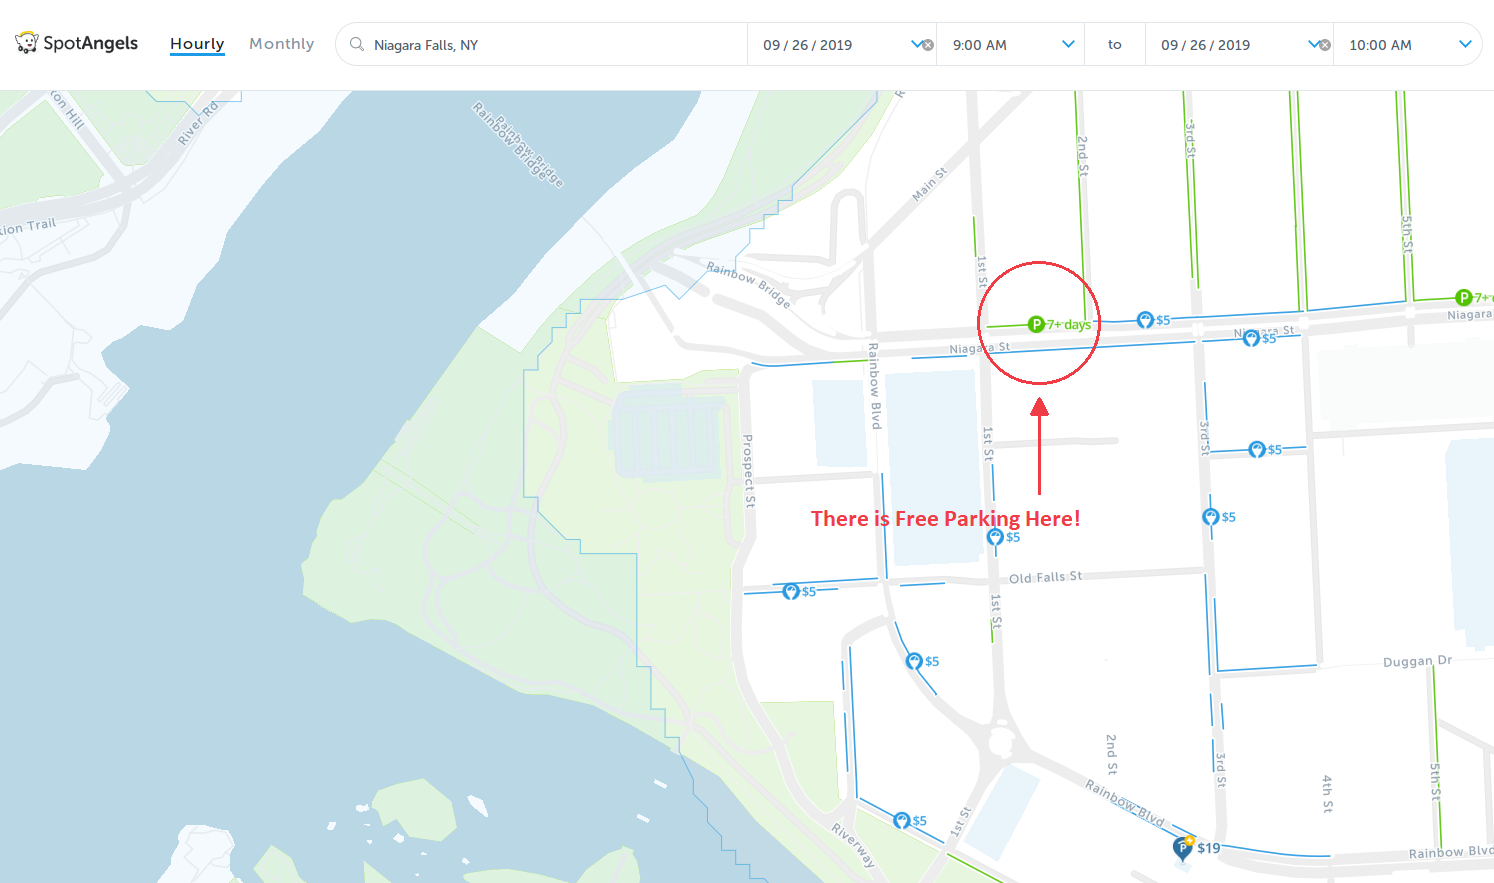 map of free parking in Niagara Falls - SpotAngels